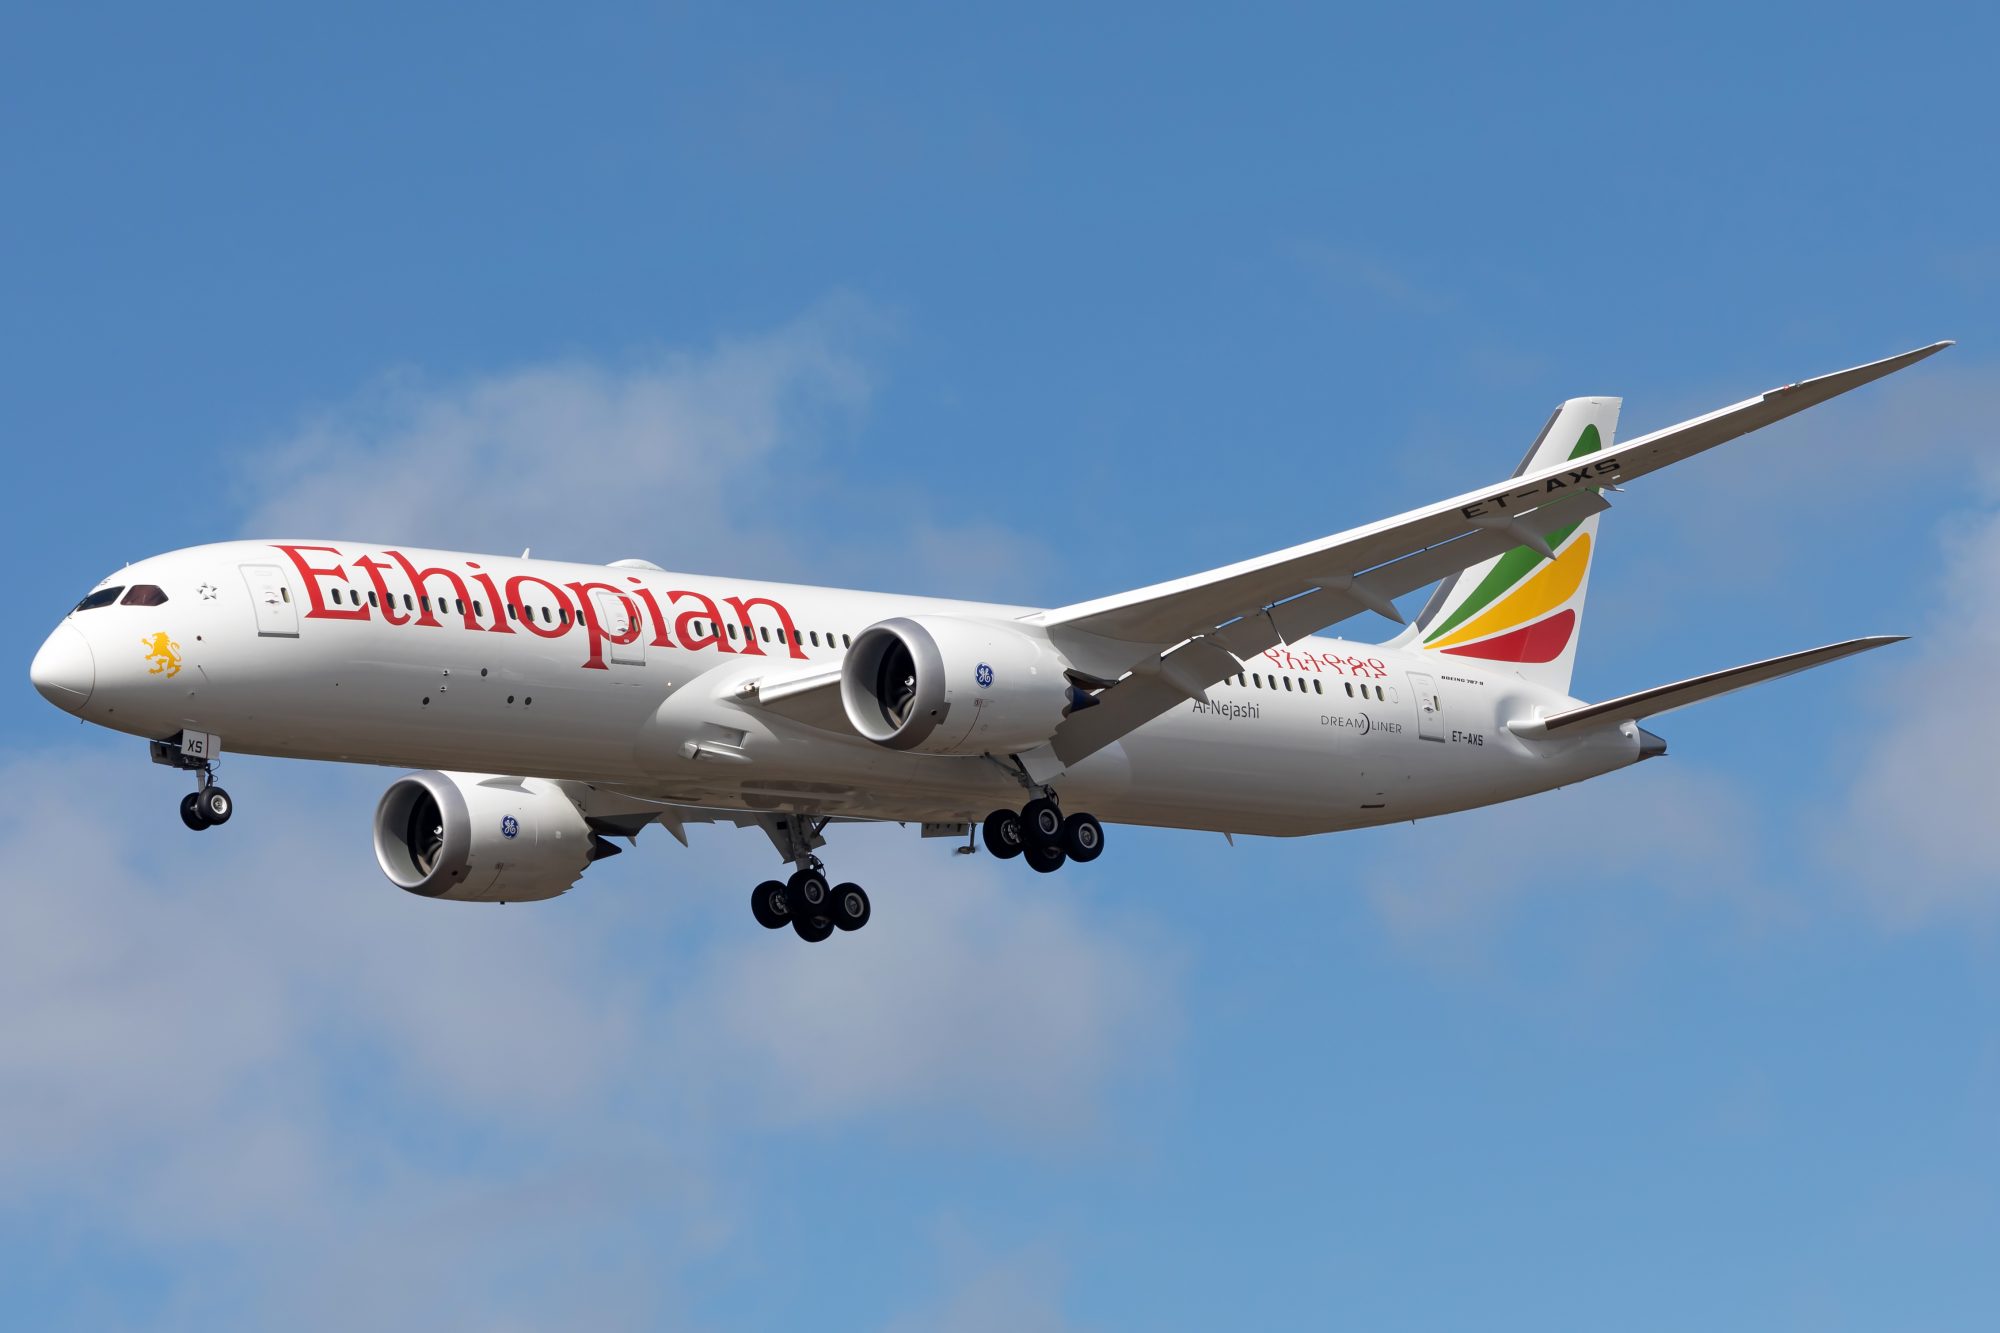 Ethiopie : les pilotes d’un avion de ligne s’endorment et ratent l’atterrissage